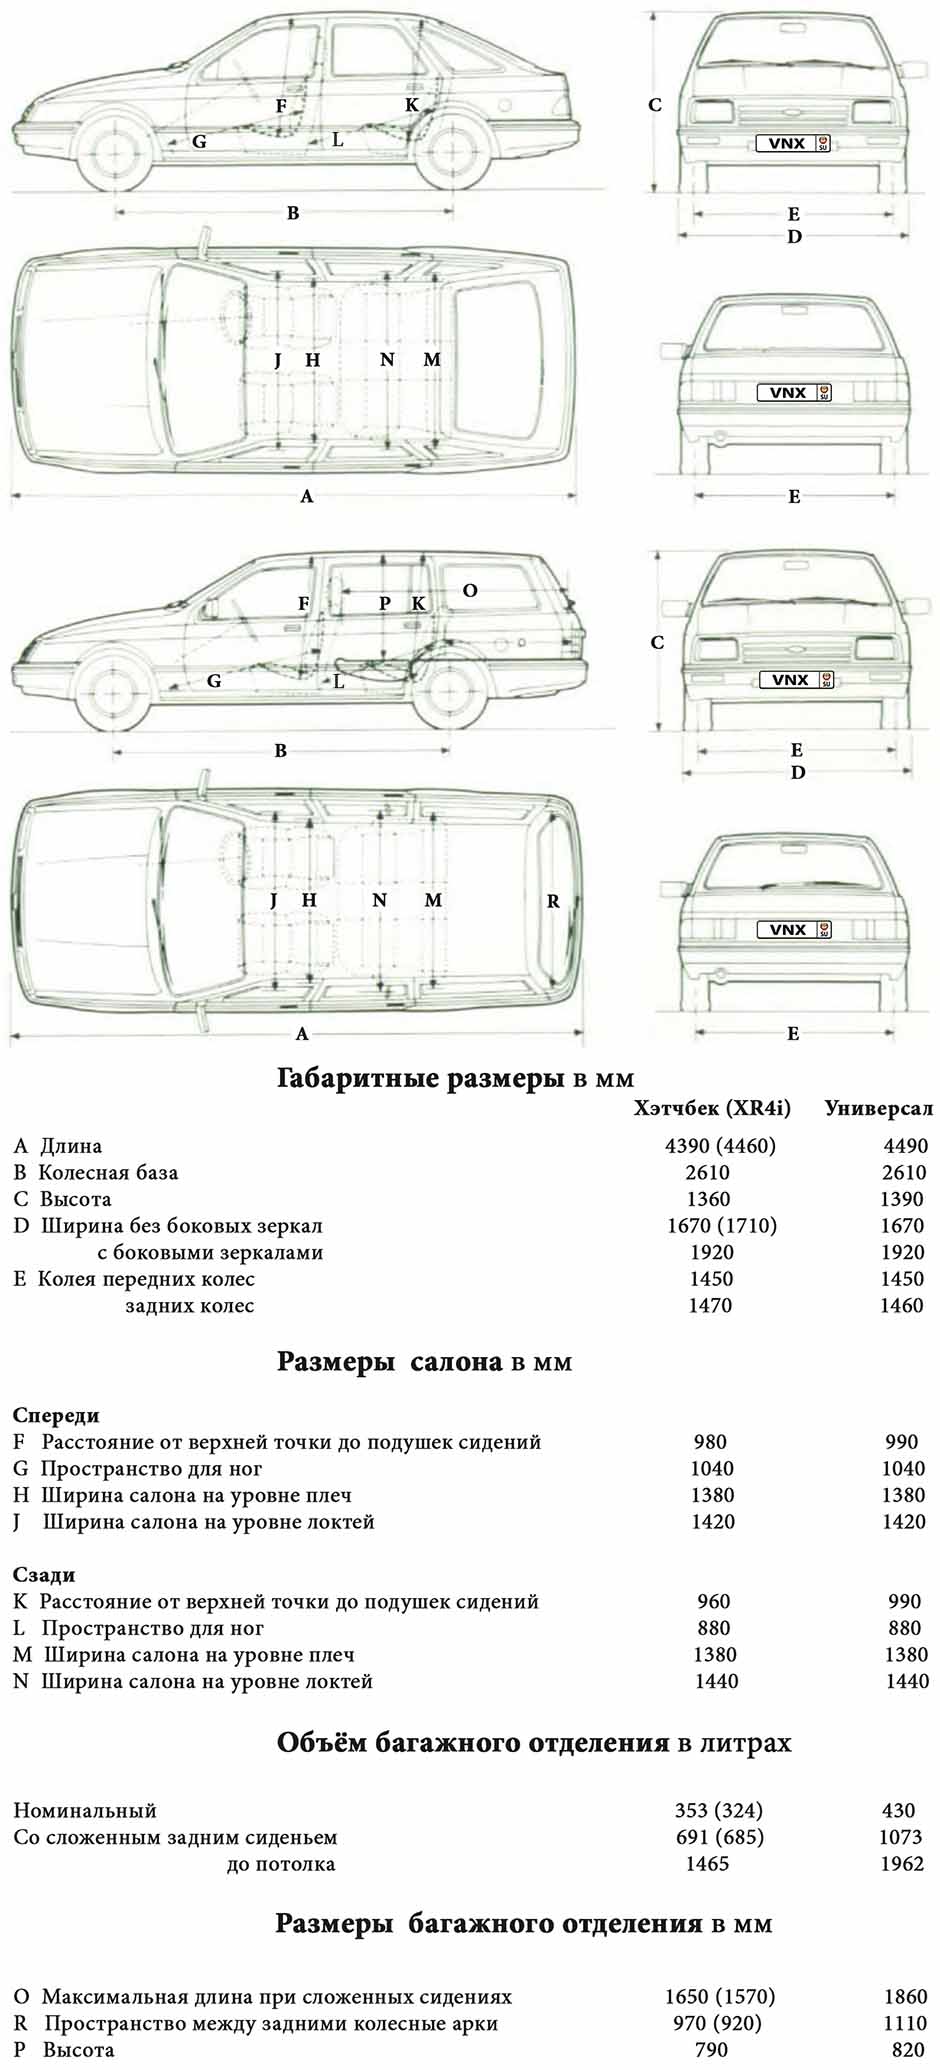 Габаритные размеры Форд Сиерра 1982-1986 (dimensions Ford Sierra mk1)